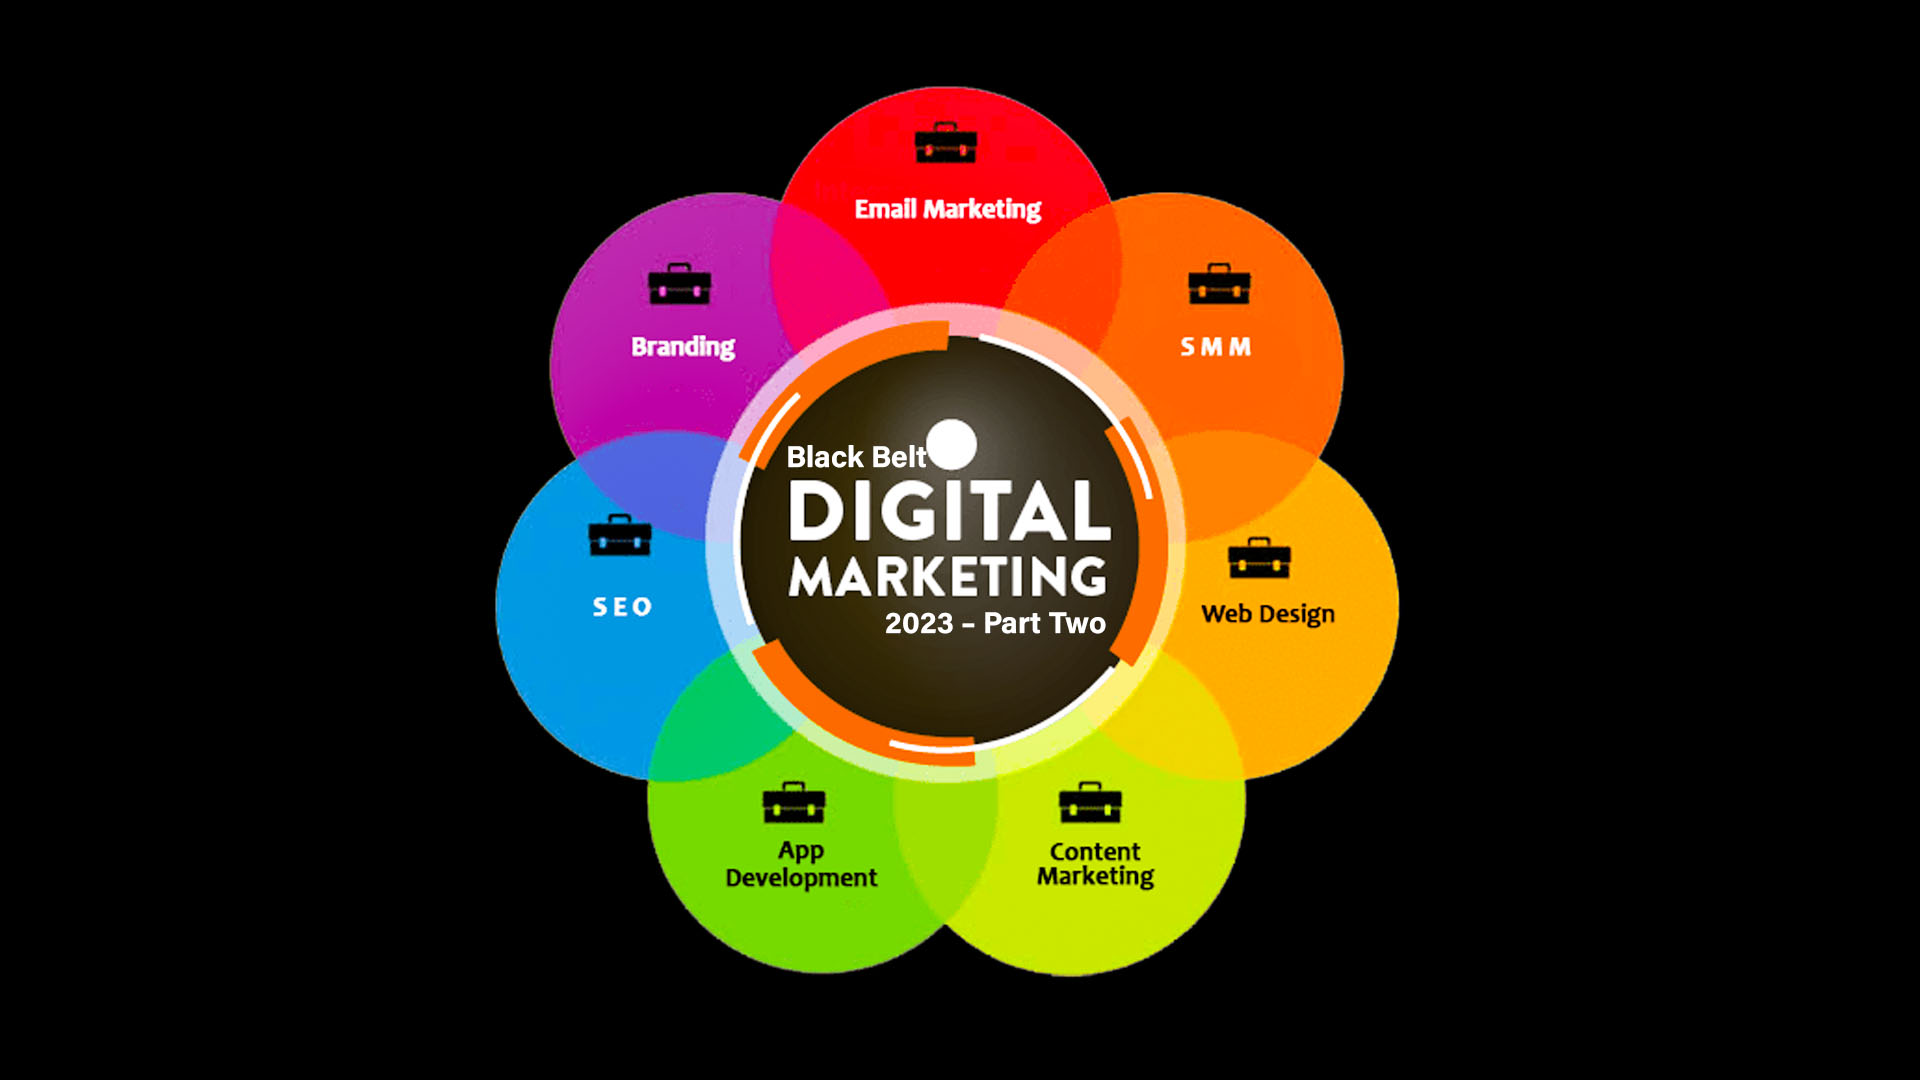 Black Belt Digital Marketing Course 2023 – Online Black Belt Part Two